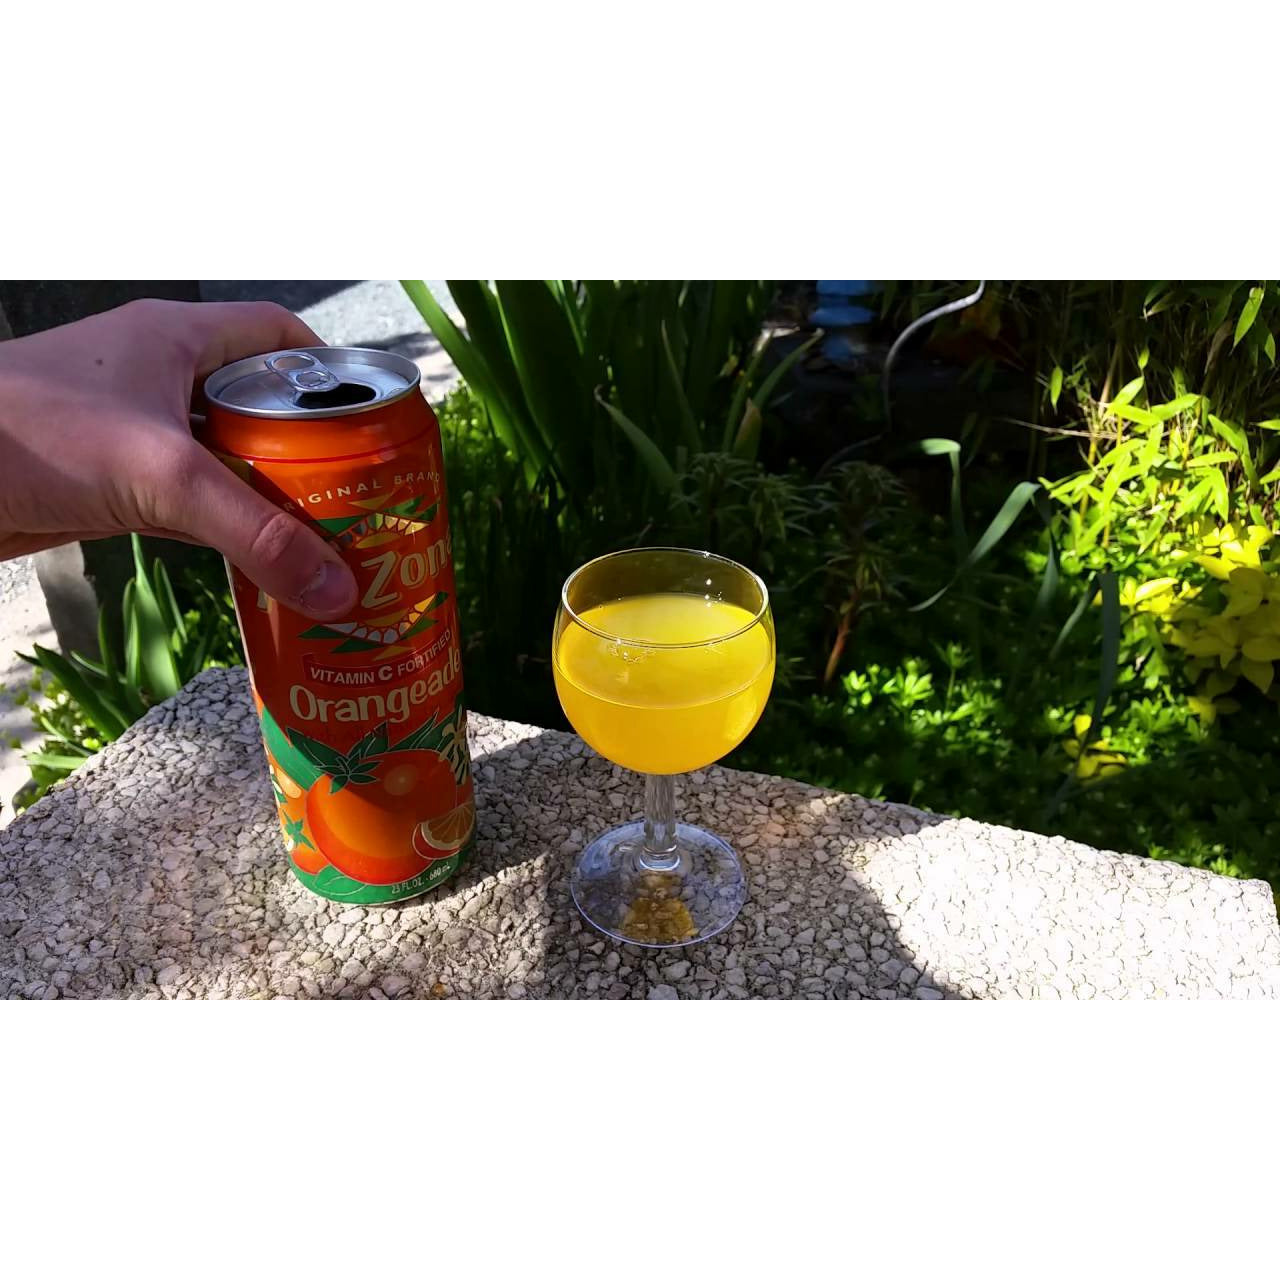 Une main qui tient une canette orange ouverte et à droite un verre de boisson sur une dalle en pierre et devant des plantes